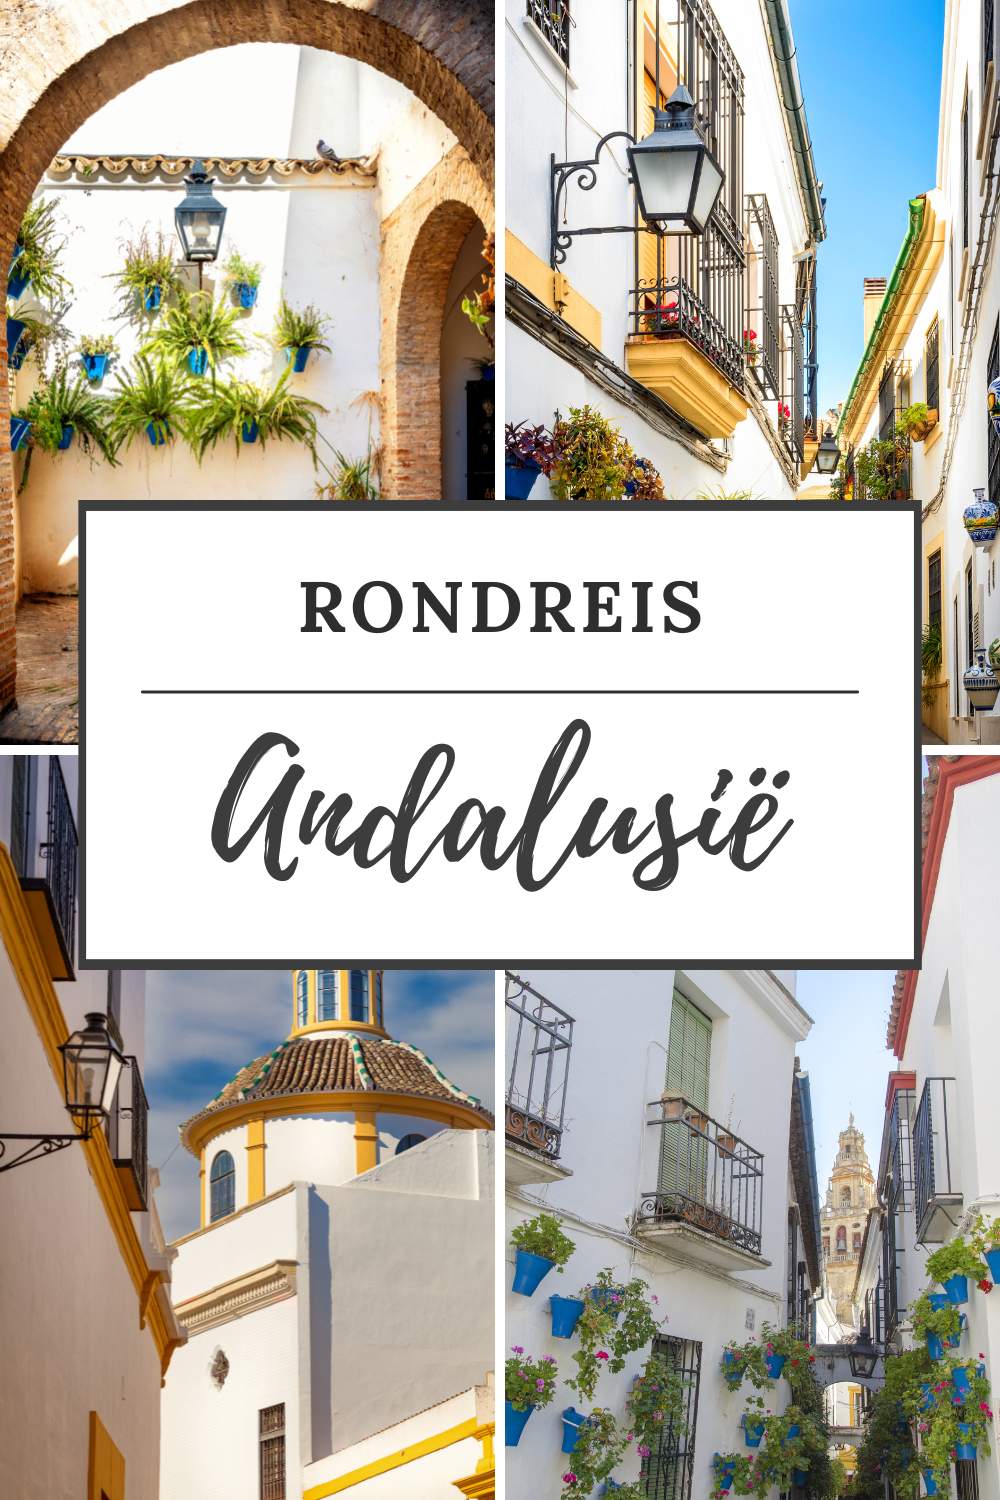 Rondreis Andalusië: bekijk de leukste tips voor je rondreis Andalusië | Mooistestedentrips.nl